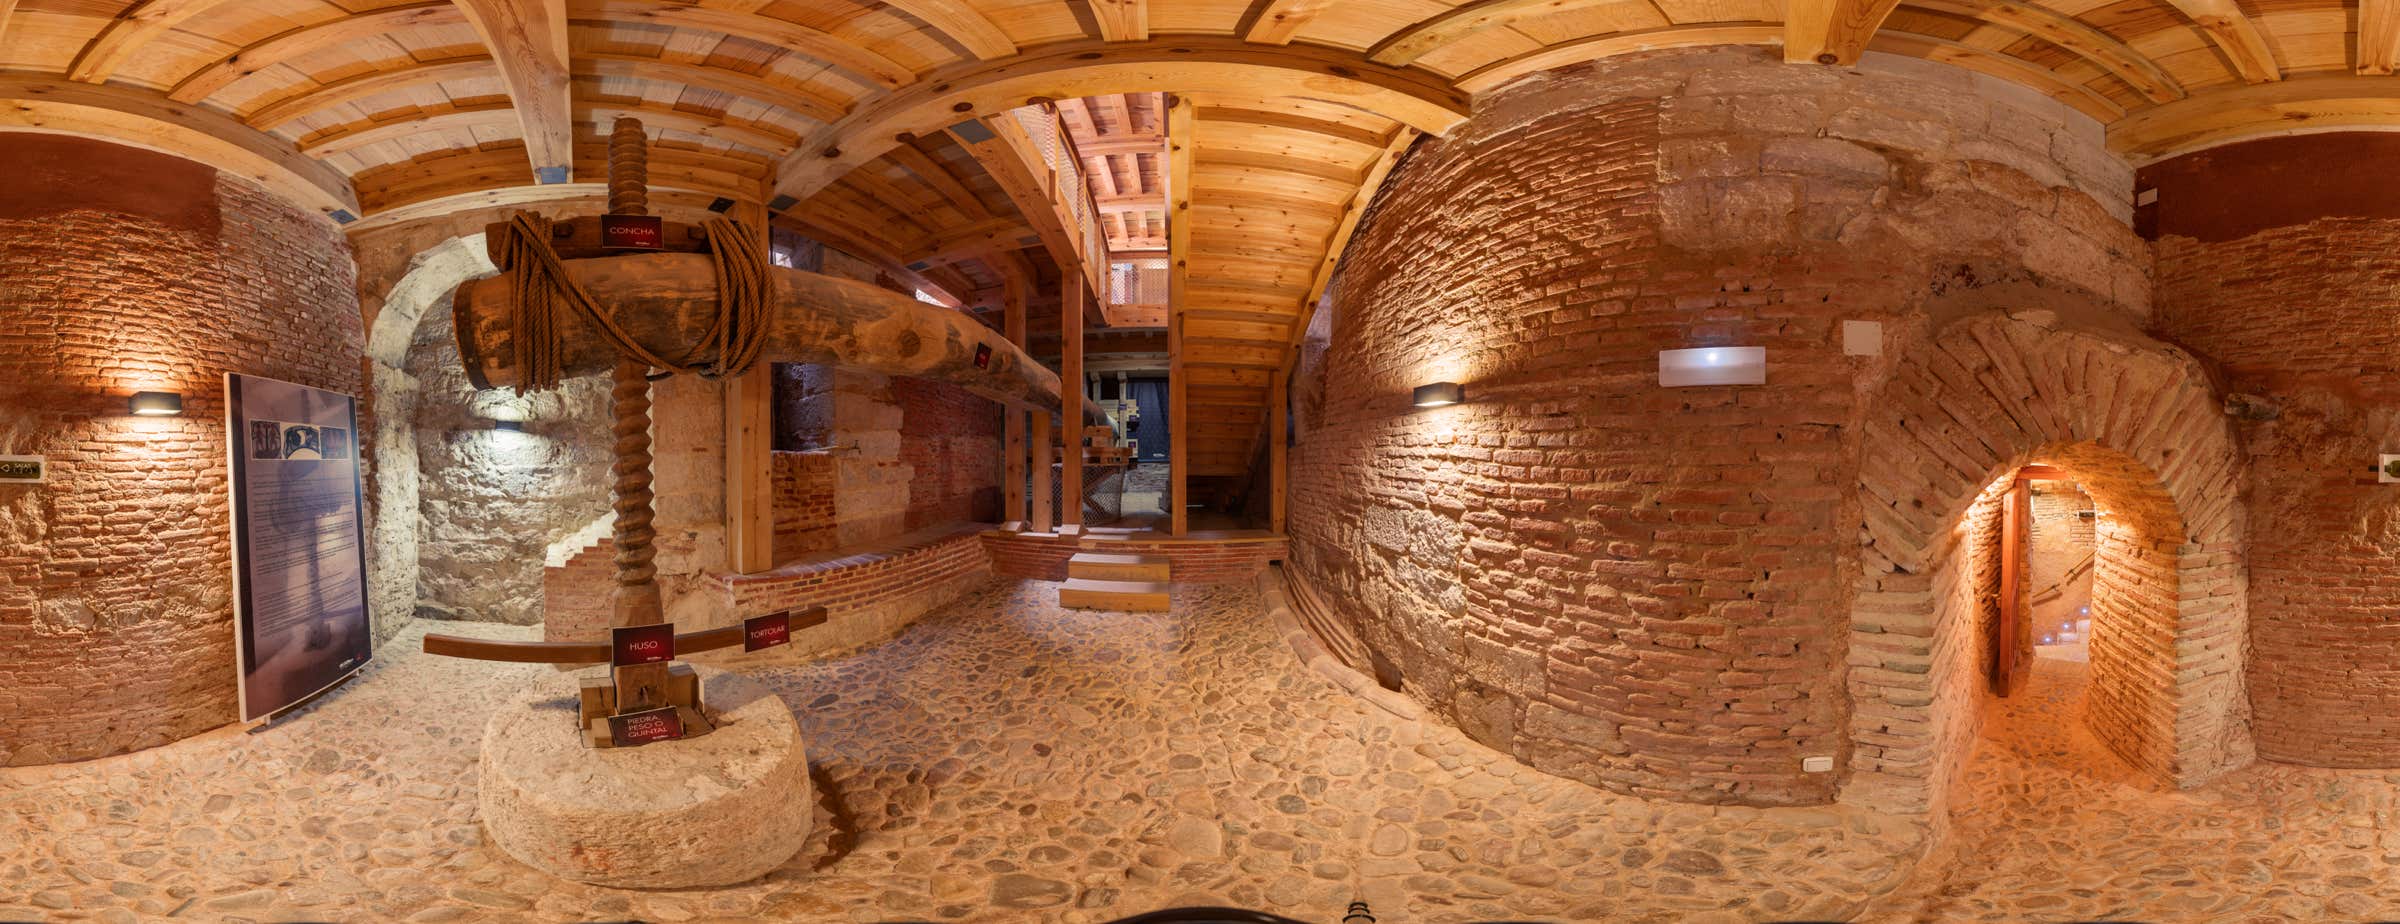 360°-Panoramabild im Inneren des Museums, das eine große Holzpresse zeigt, mit der der Saft aus den Trauben gepresst wurde.